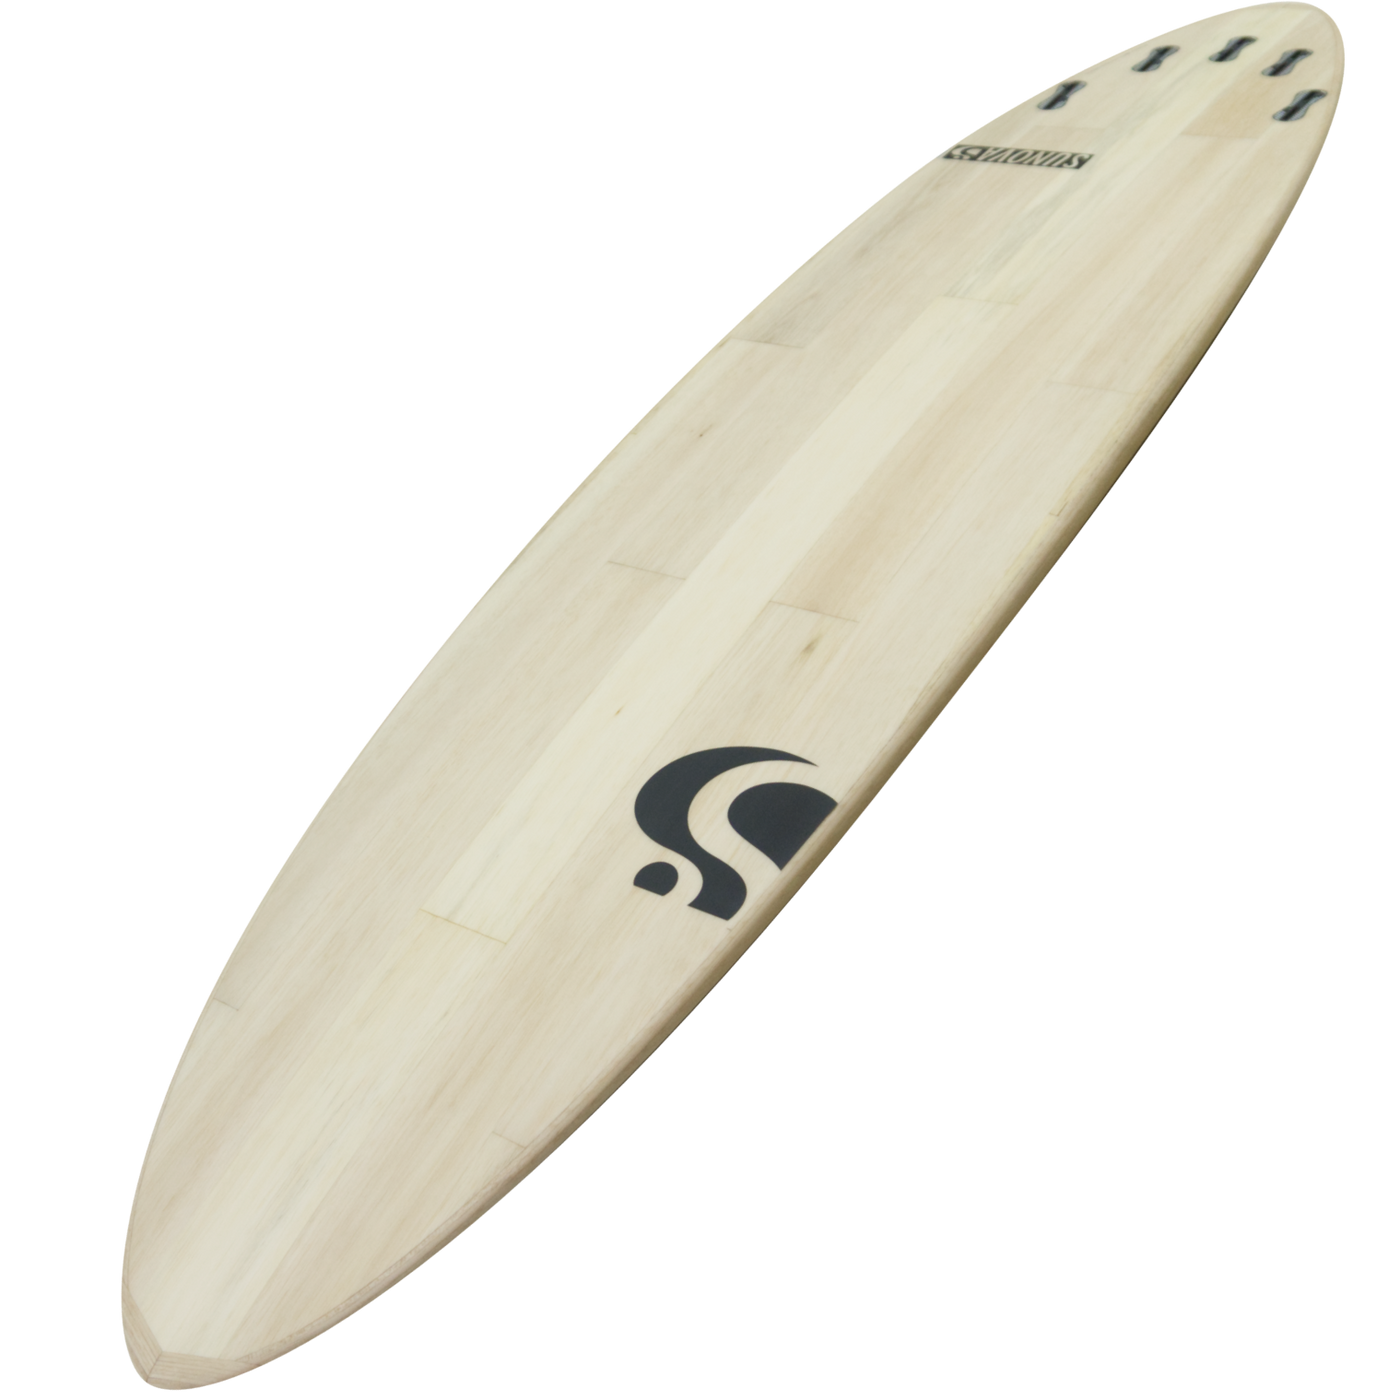 Bondi 8Ball Surfboard 8'0"